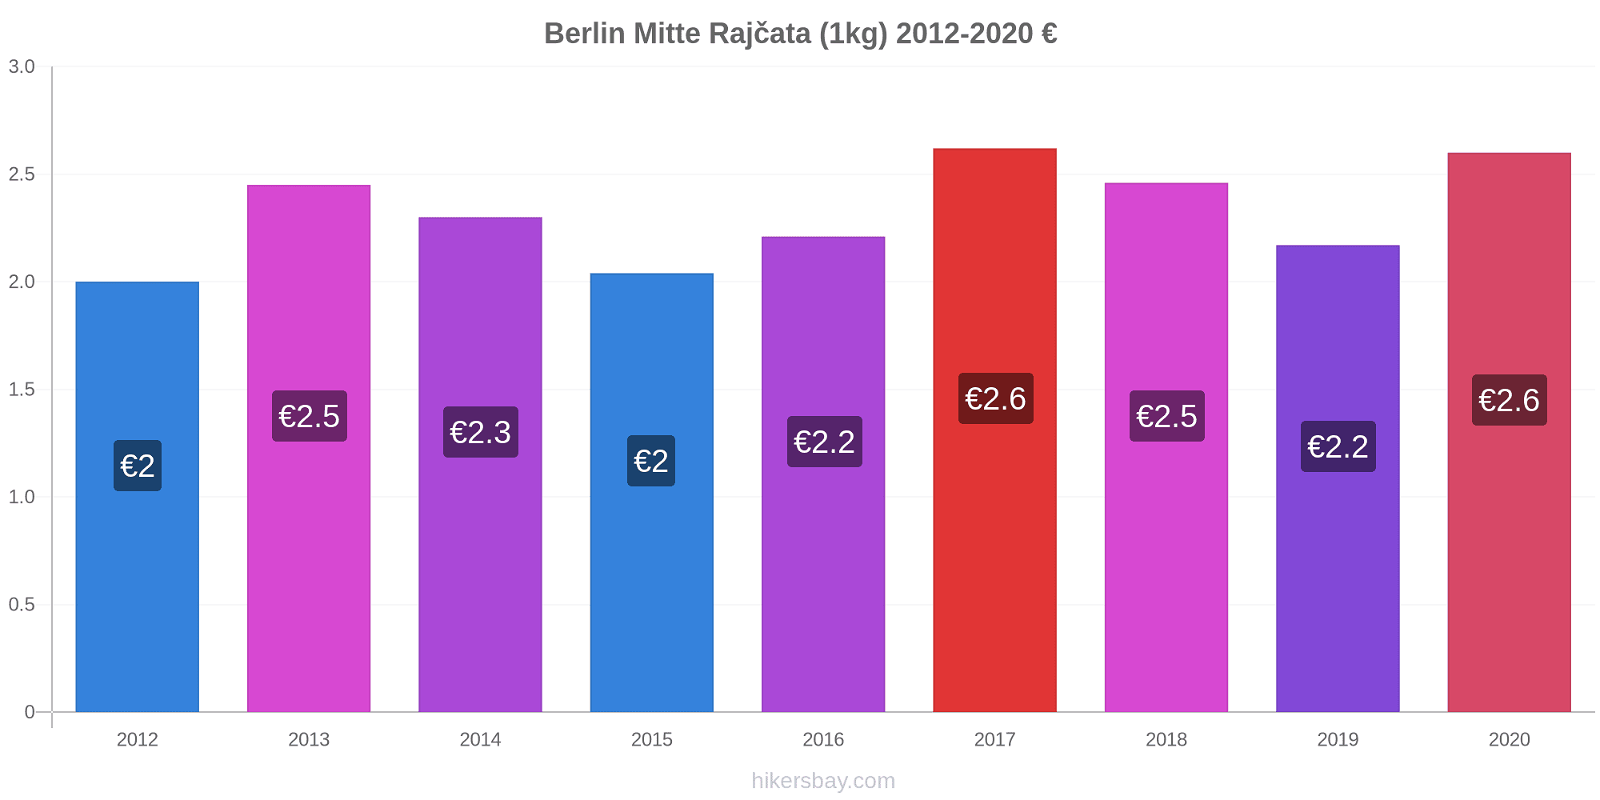 Berlin Mitte změny cen Rajčata (1kg) hikersbay.com